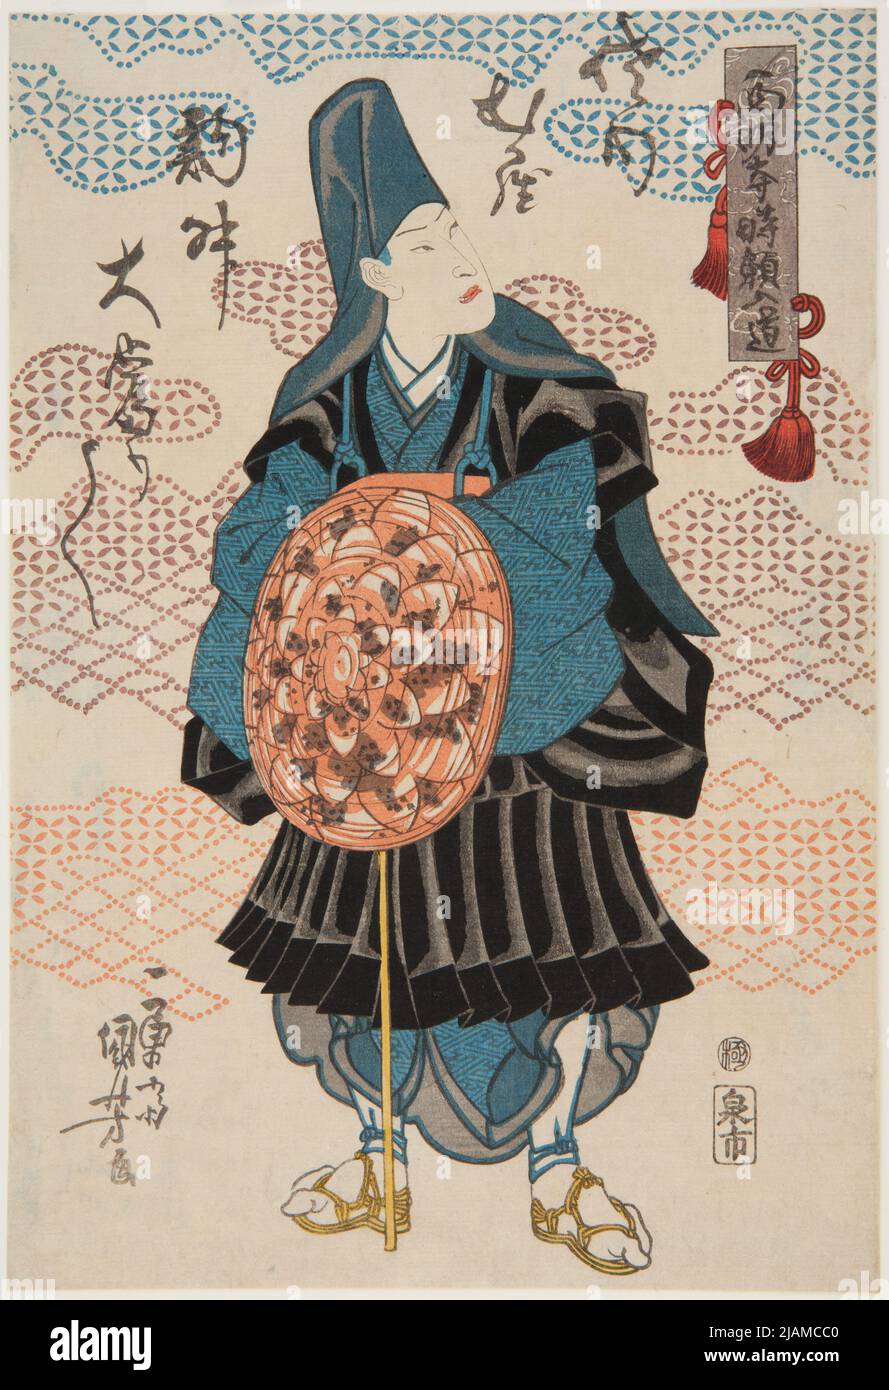 Aktor Sawamura TosShō W Roli Saimy ōjiego TOKIYORIEGO NYūdō / SAIMY ōJI TOKIYORI NY ūdō Utagawa, kuniyoshi (1797 1861) Stock Photo